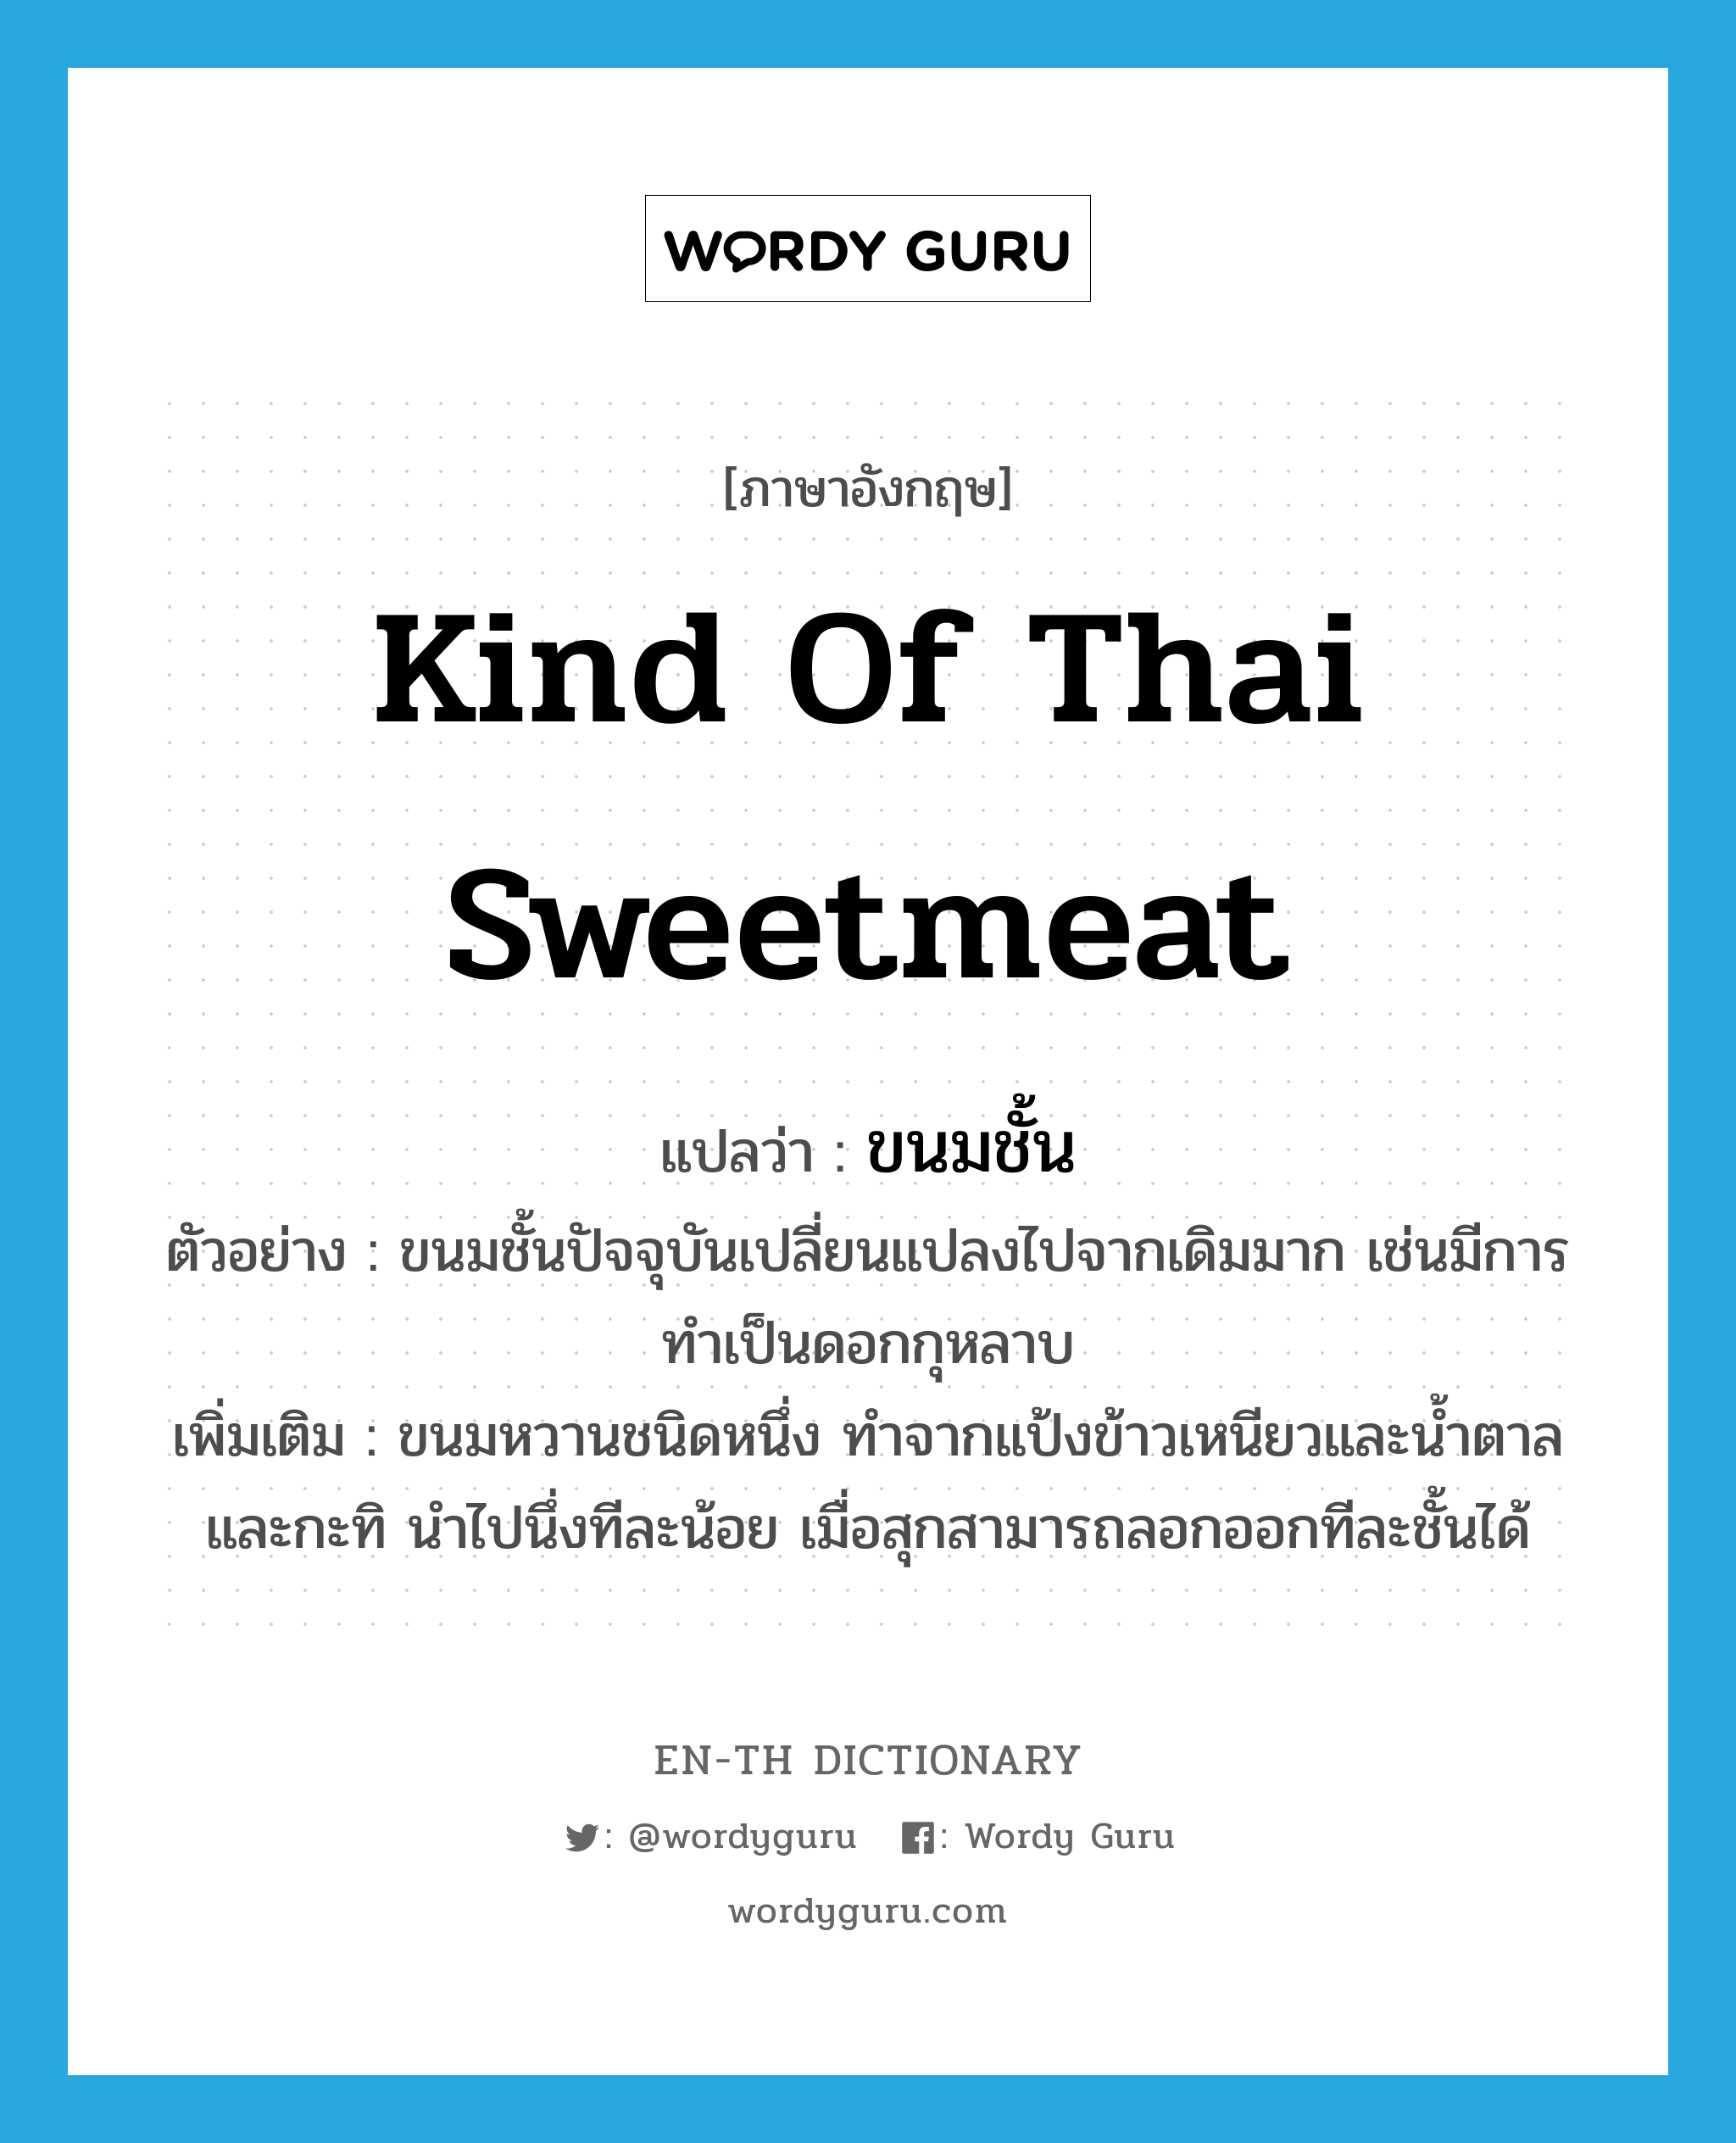 ขนมชั้น ภาษาอังกฤษ?, คำศัพท์ภาษาอังกฤษ ขนมชั้น แปลว่า kind of Thai sweetmeat ประเภท N ตัวอย่าง ขนมชั้นปัจจุบันเปลี่ยนแปลงไปจากเดิมมาก เช่นมีการทำเป็นดอกกุหลาบ เพิ่มเติม ขนมหวานชนิดหนึ่ง ทำจากแป้งข้าวเหนียวและน้ำตาล และกะทิ นำไปนึ่งทีละน้อย เมื่อสุกสามารถลอกออกทีละชั้นได้ หมวด N